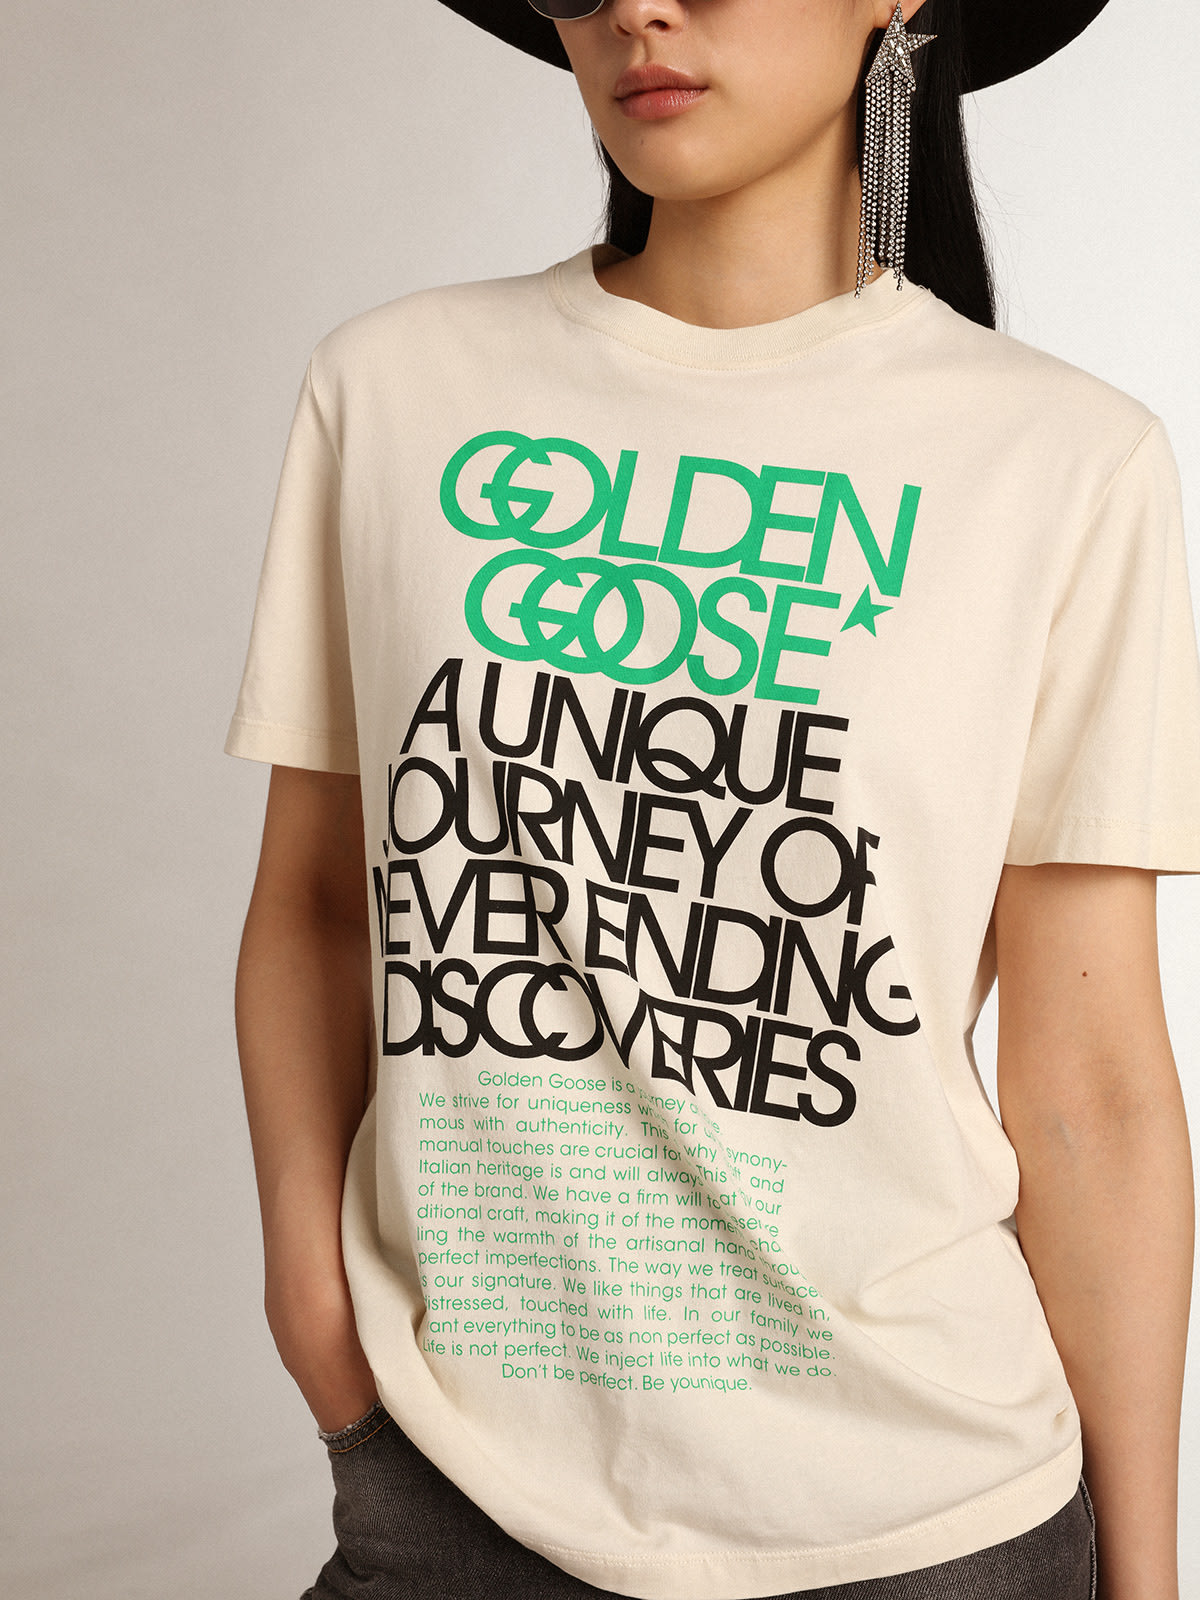 Golden Goose - T-shirt da donna di colore bone white con scritte sul davanti in 